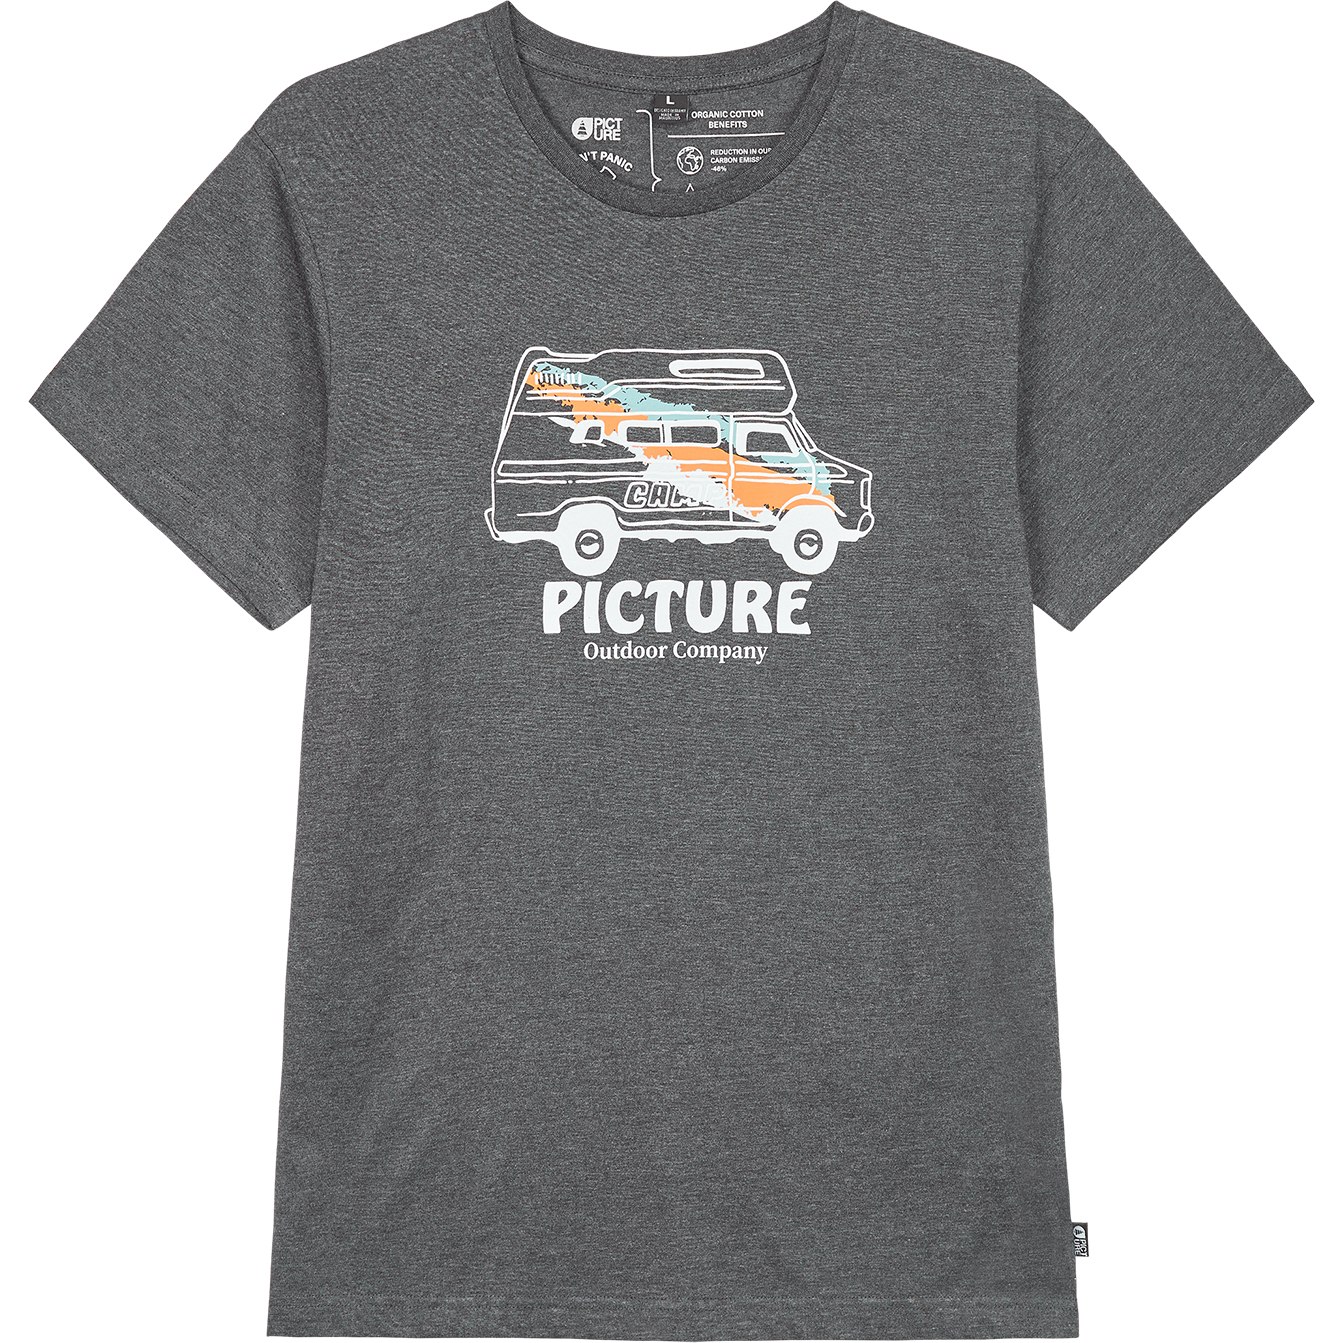 Produktbild von Picture Custom Van T-Shirt - Dark grey melange